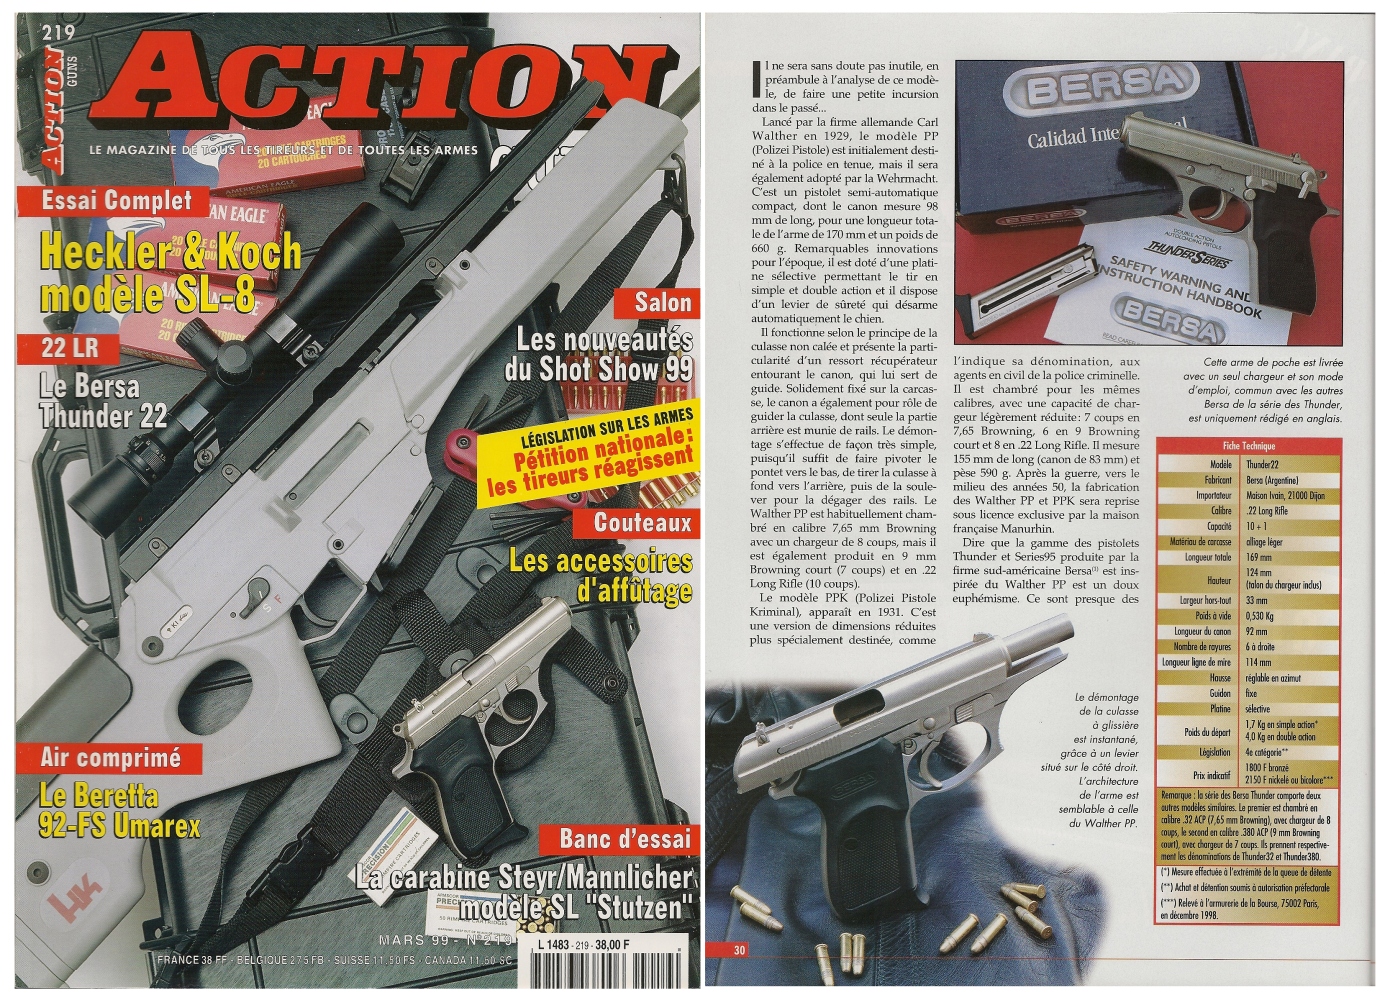 Le banc d’essai du pistolet Bersa Thunder22 a été publié sur 5 pages dans le magazine Action Guns n°219 (mars 1999).